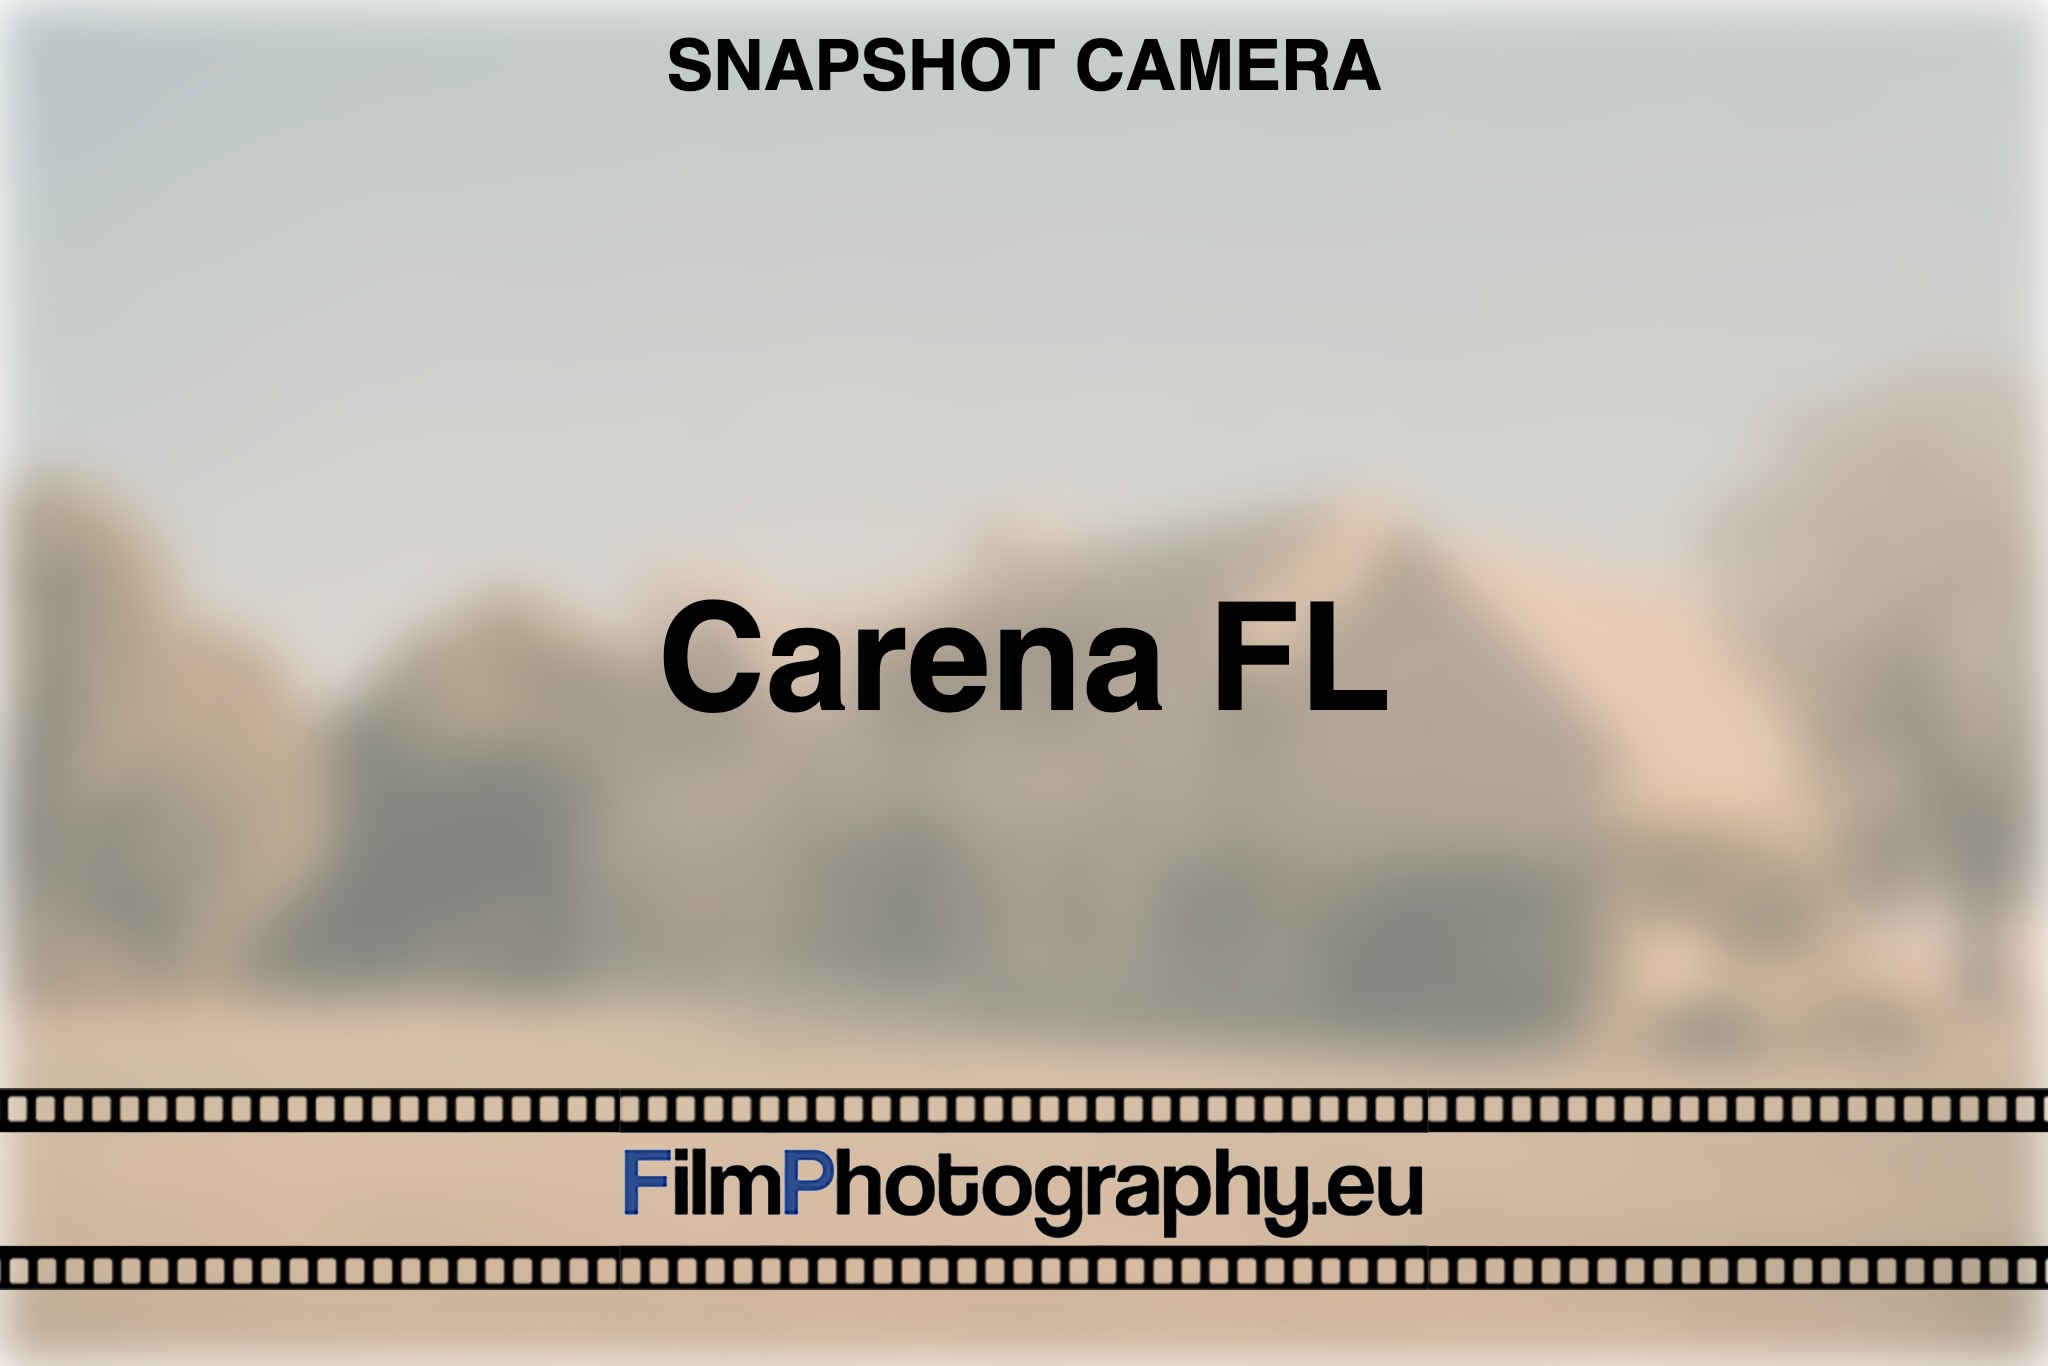 carena-fl-snapshot-camera-bnv